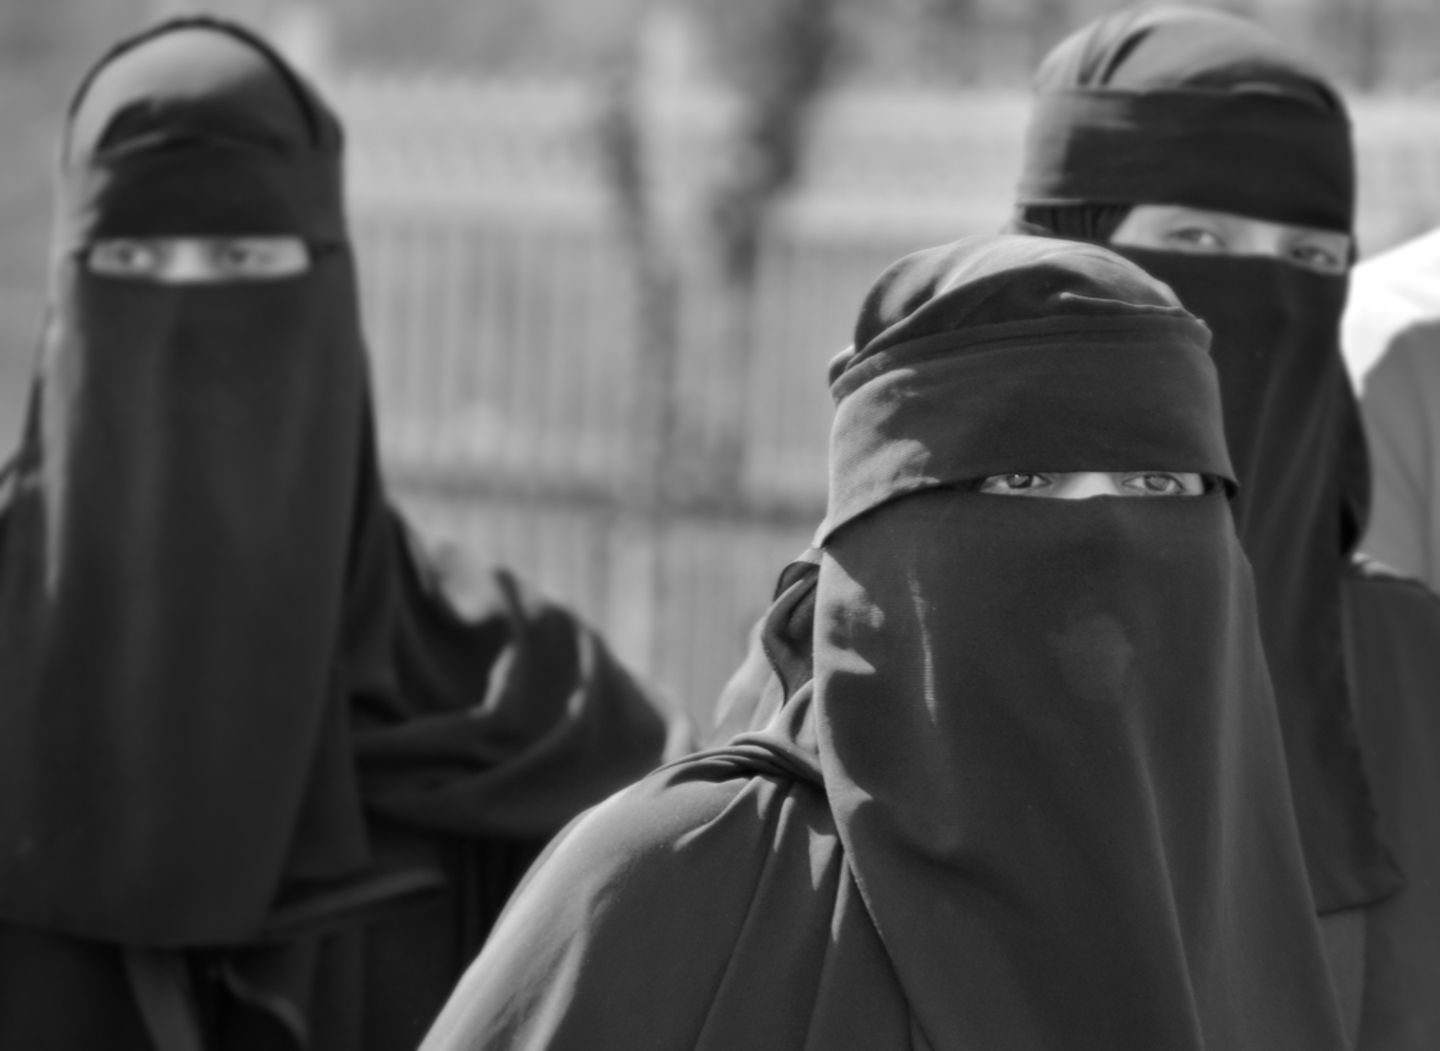 Burka-Verbot in Bayern beschlossen